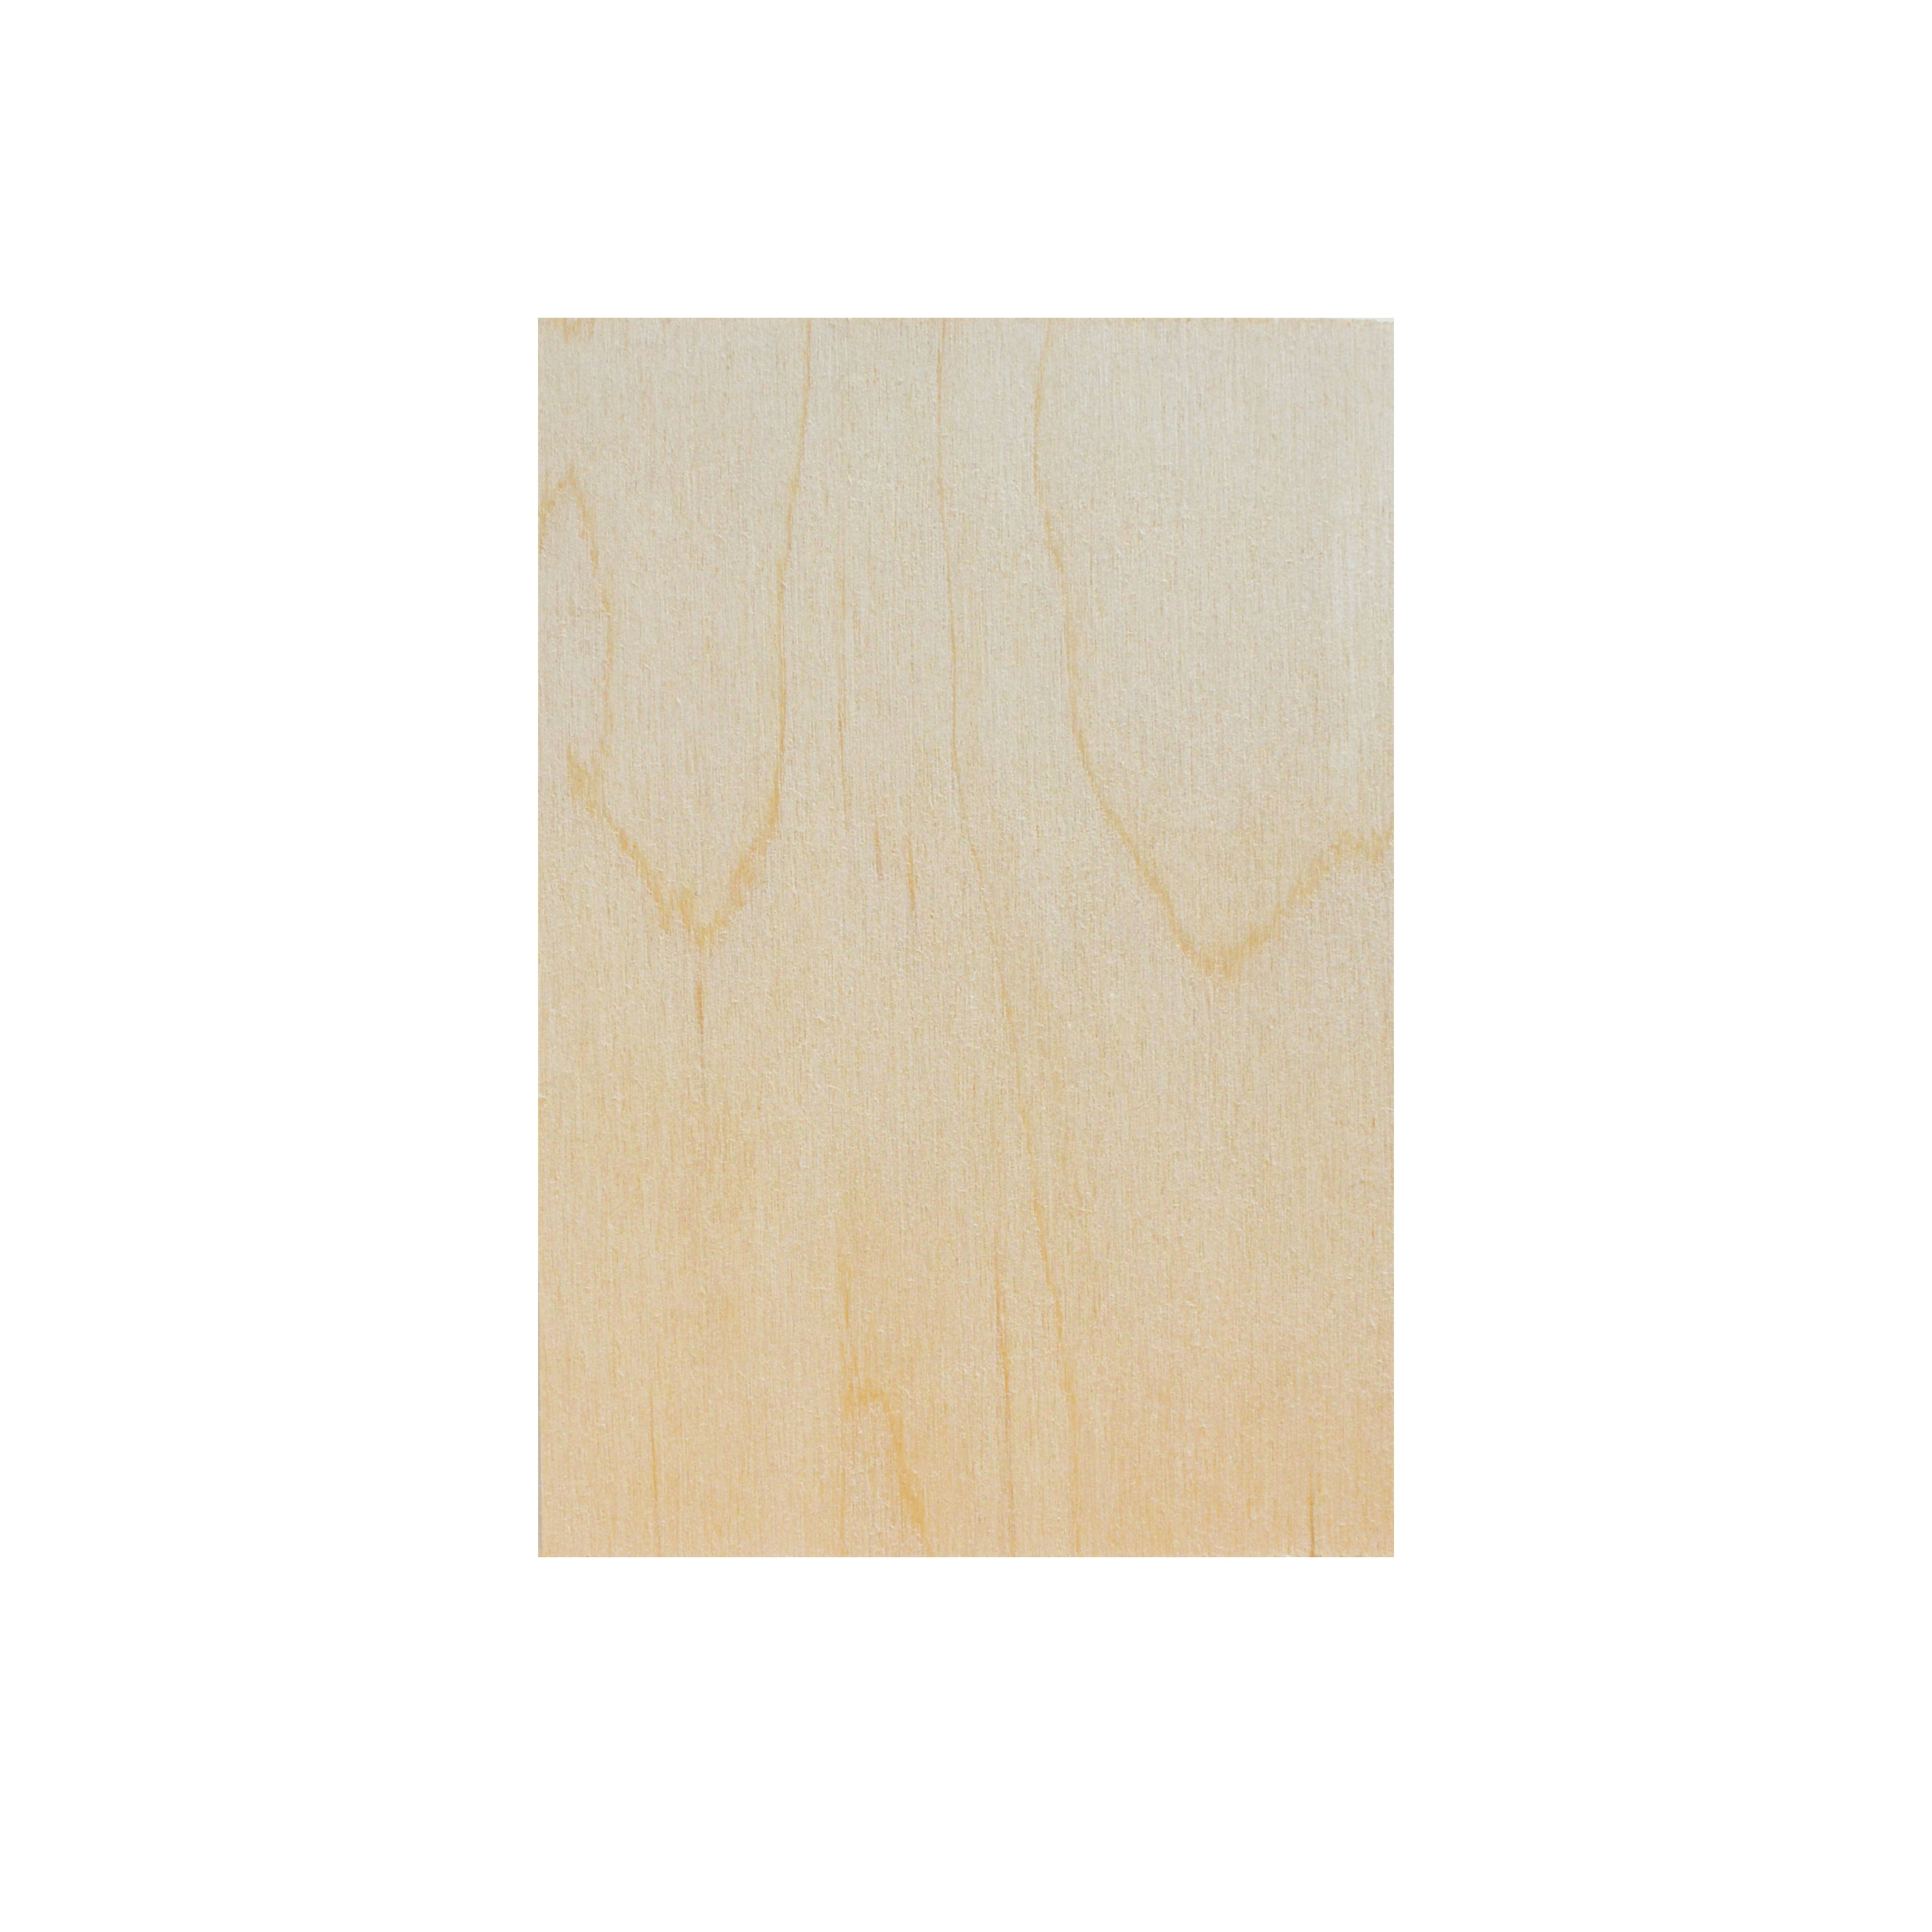 Grußkarte aus Holz